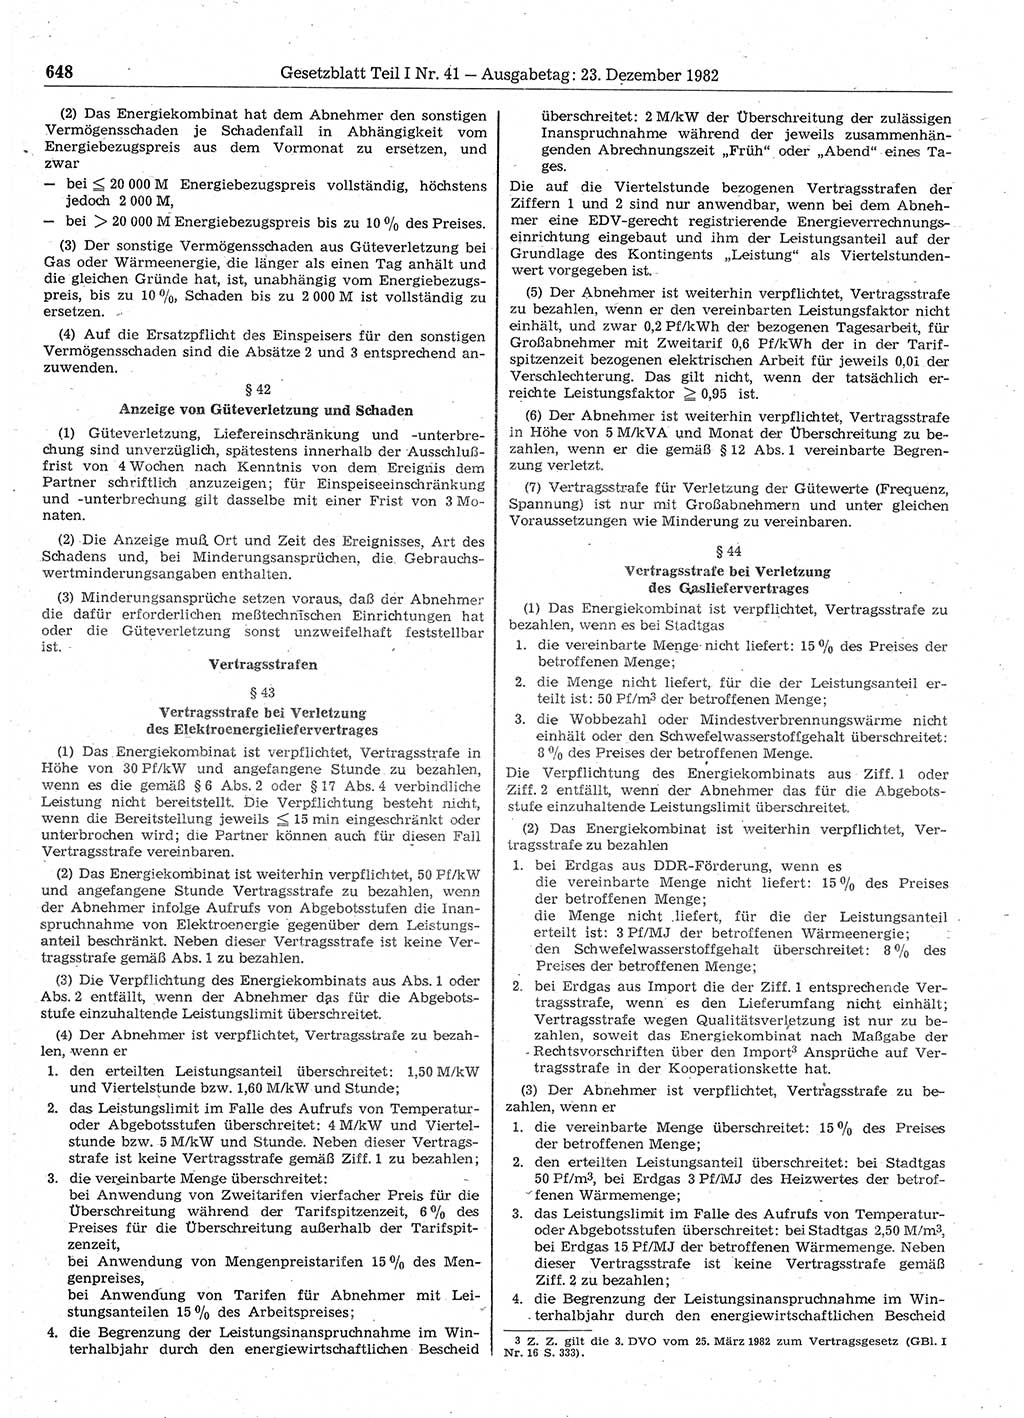 Gesetzblatt (GBl.) der Deutschen Demokratischen Republik (DDR) Teil Ⅰ 1982, Seite 648 (GBl. DDR Ⅰ 1982, S. 648)